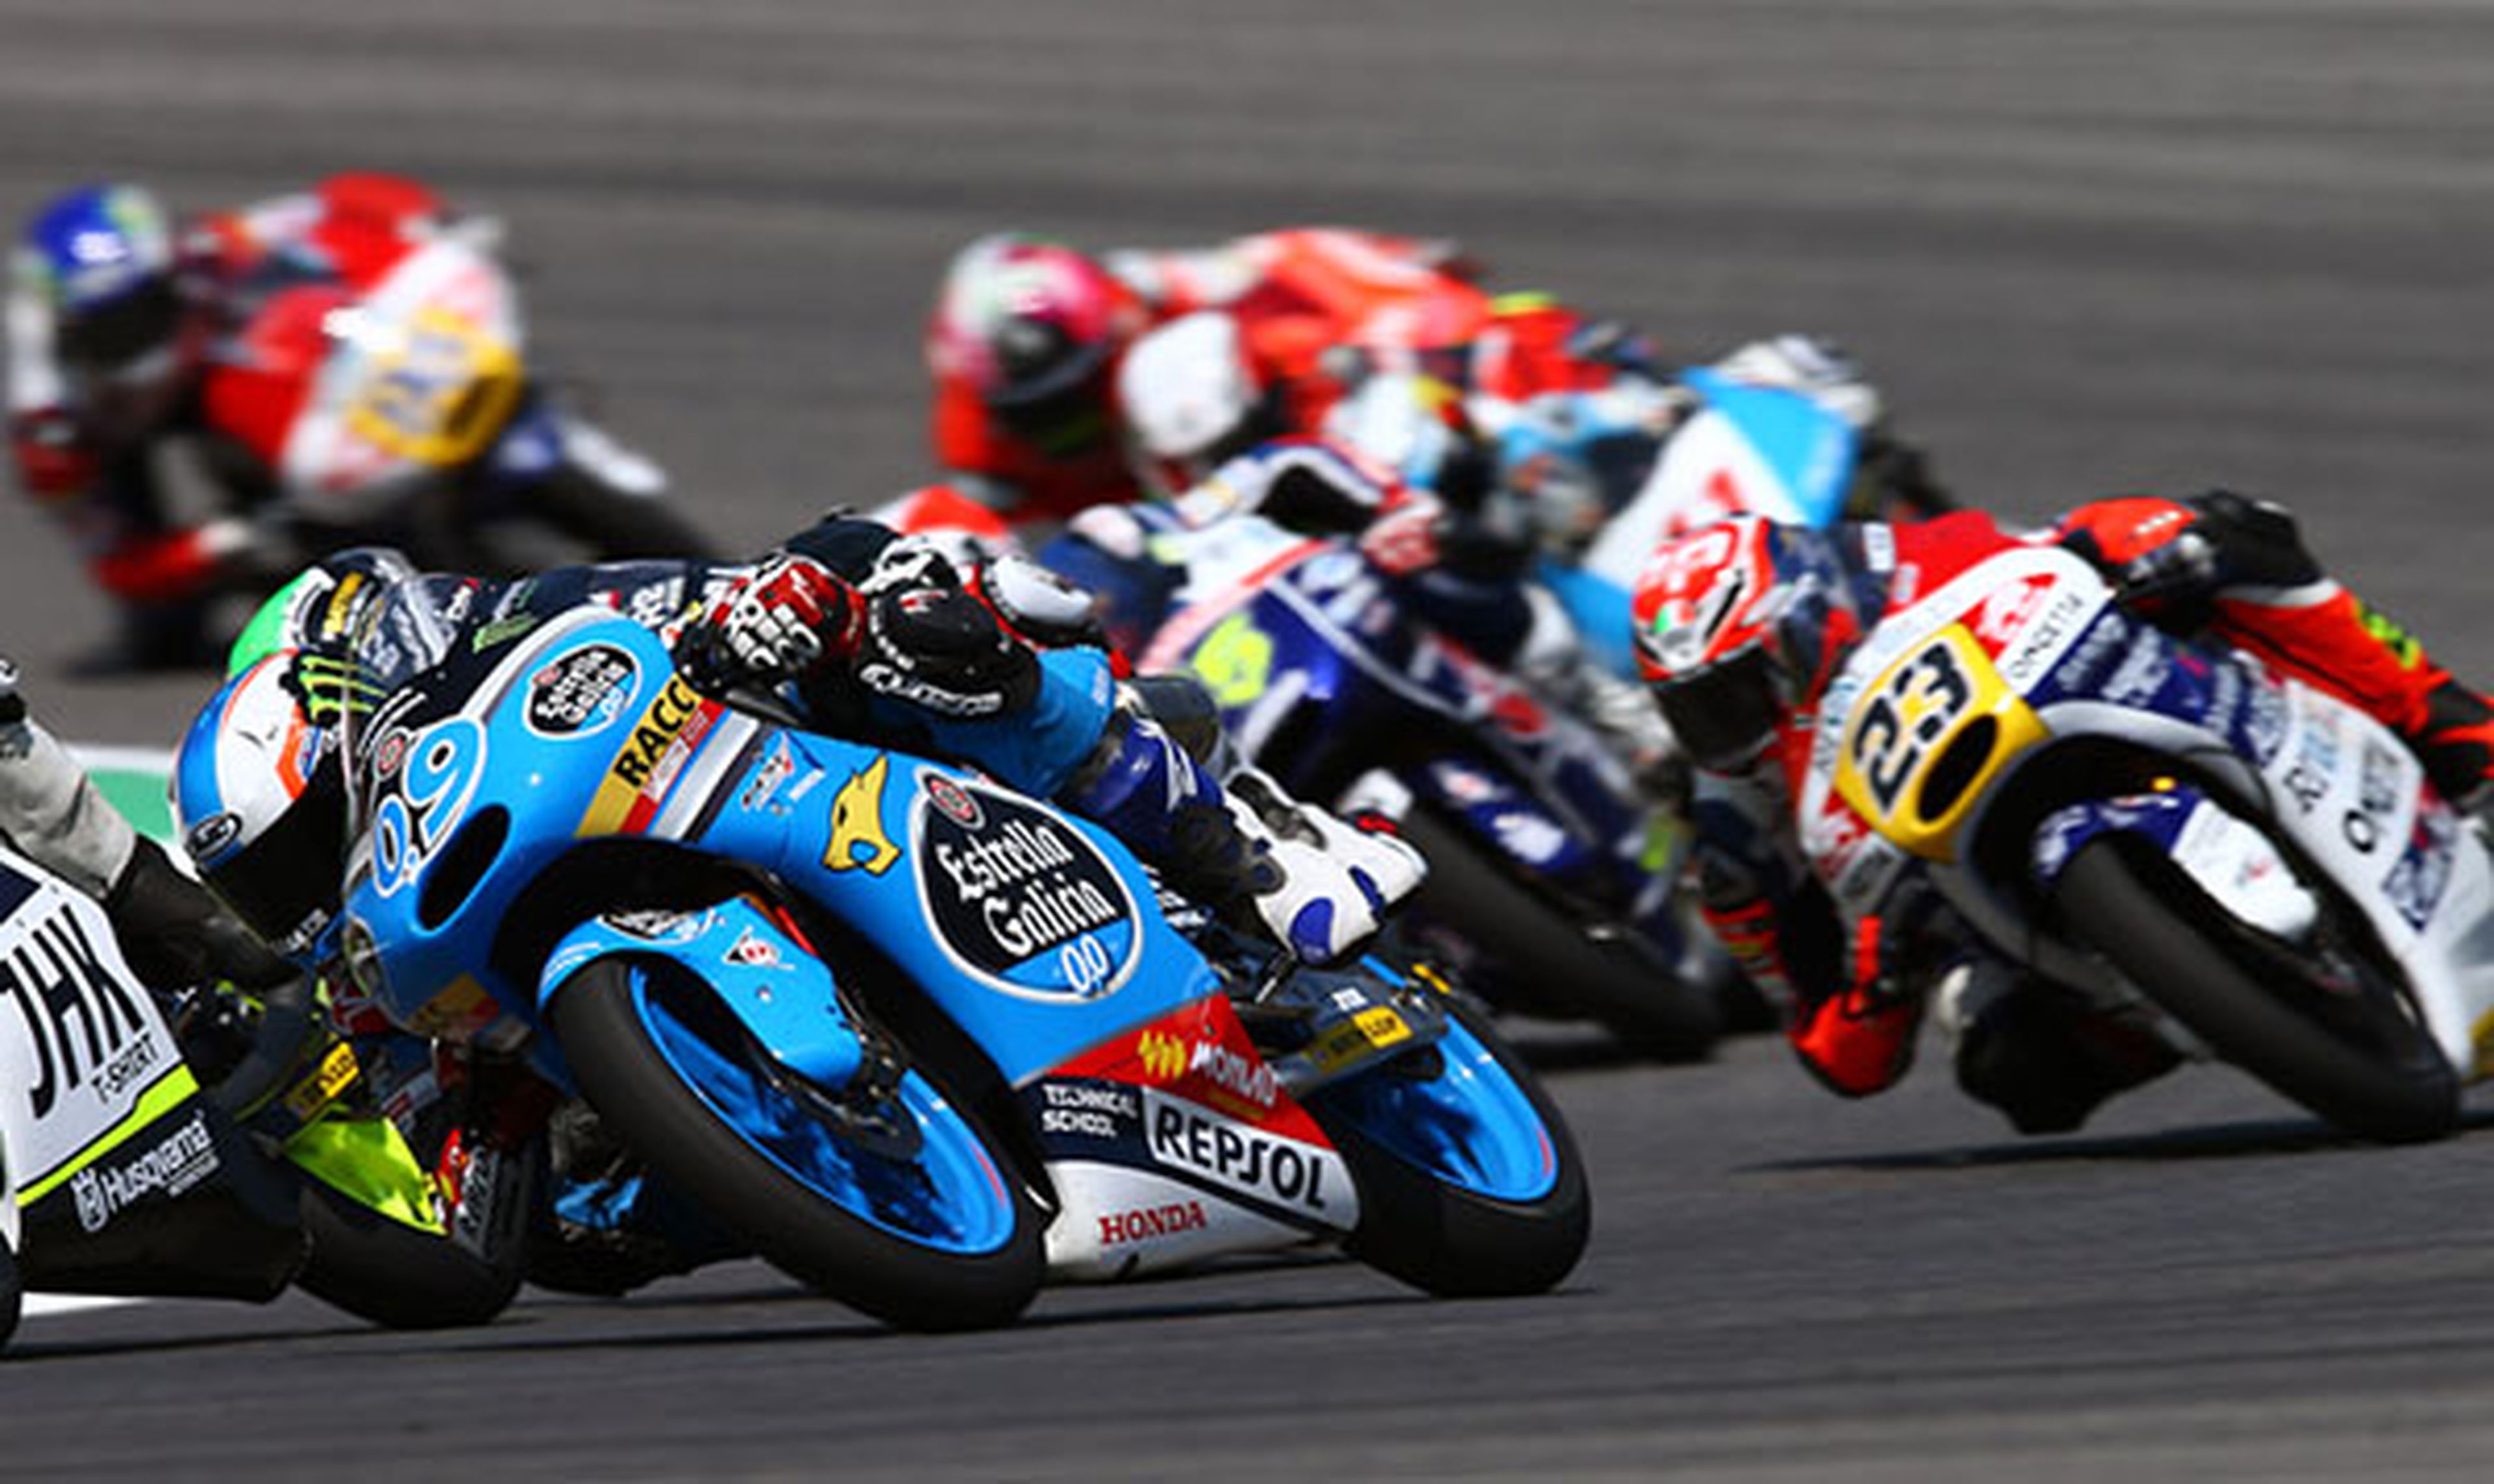 Clasificación general Moto3 tras GP de Italia 2015